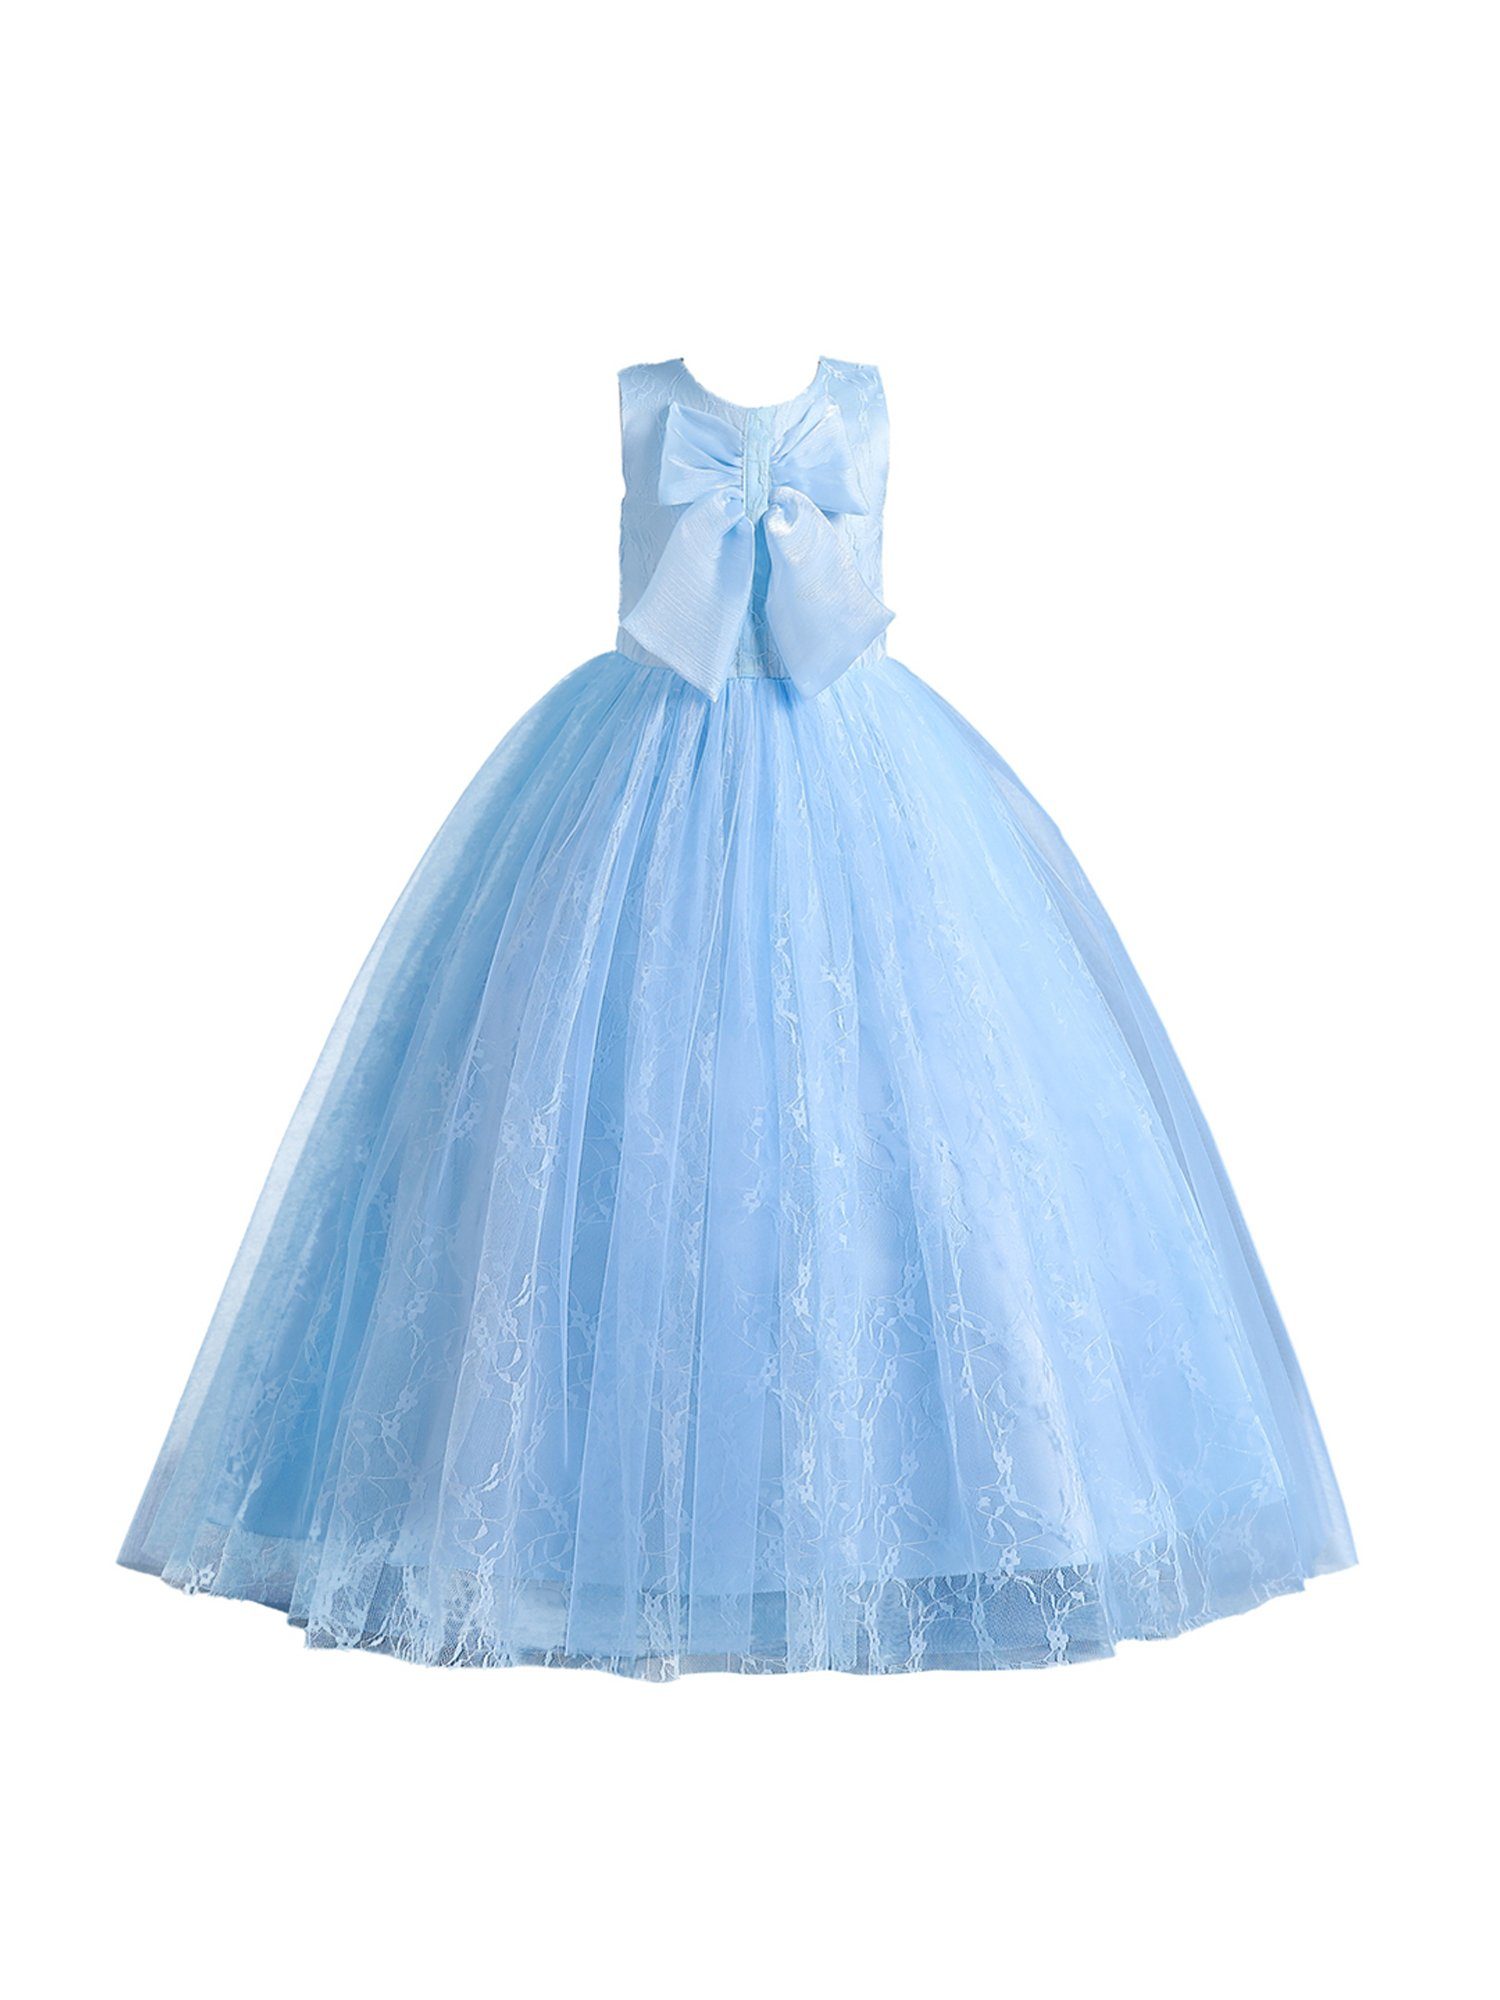 LAPA Abendkleid Mädchen Einfacher Bodenlanges Kleid Partykleid mit Spitze Blau